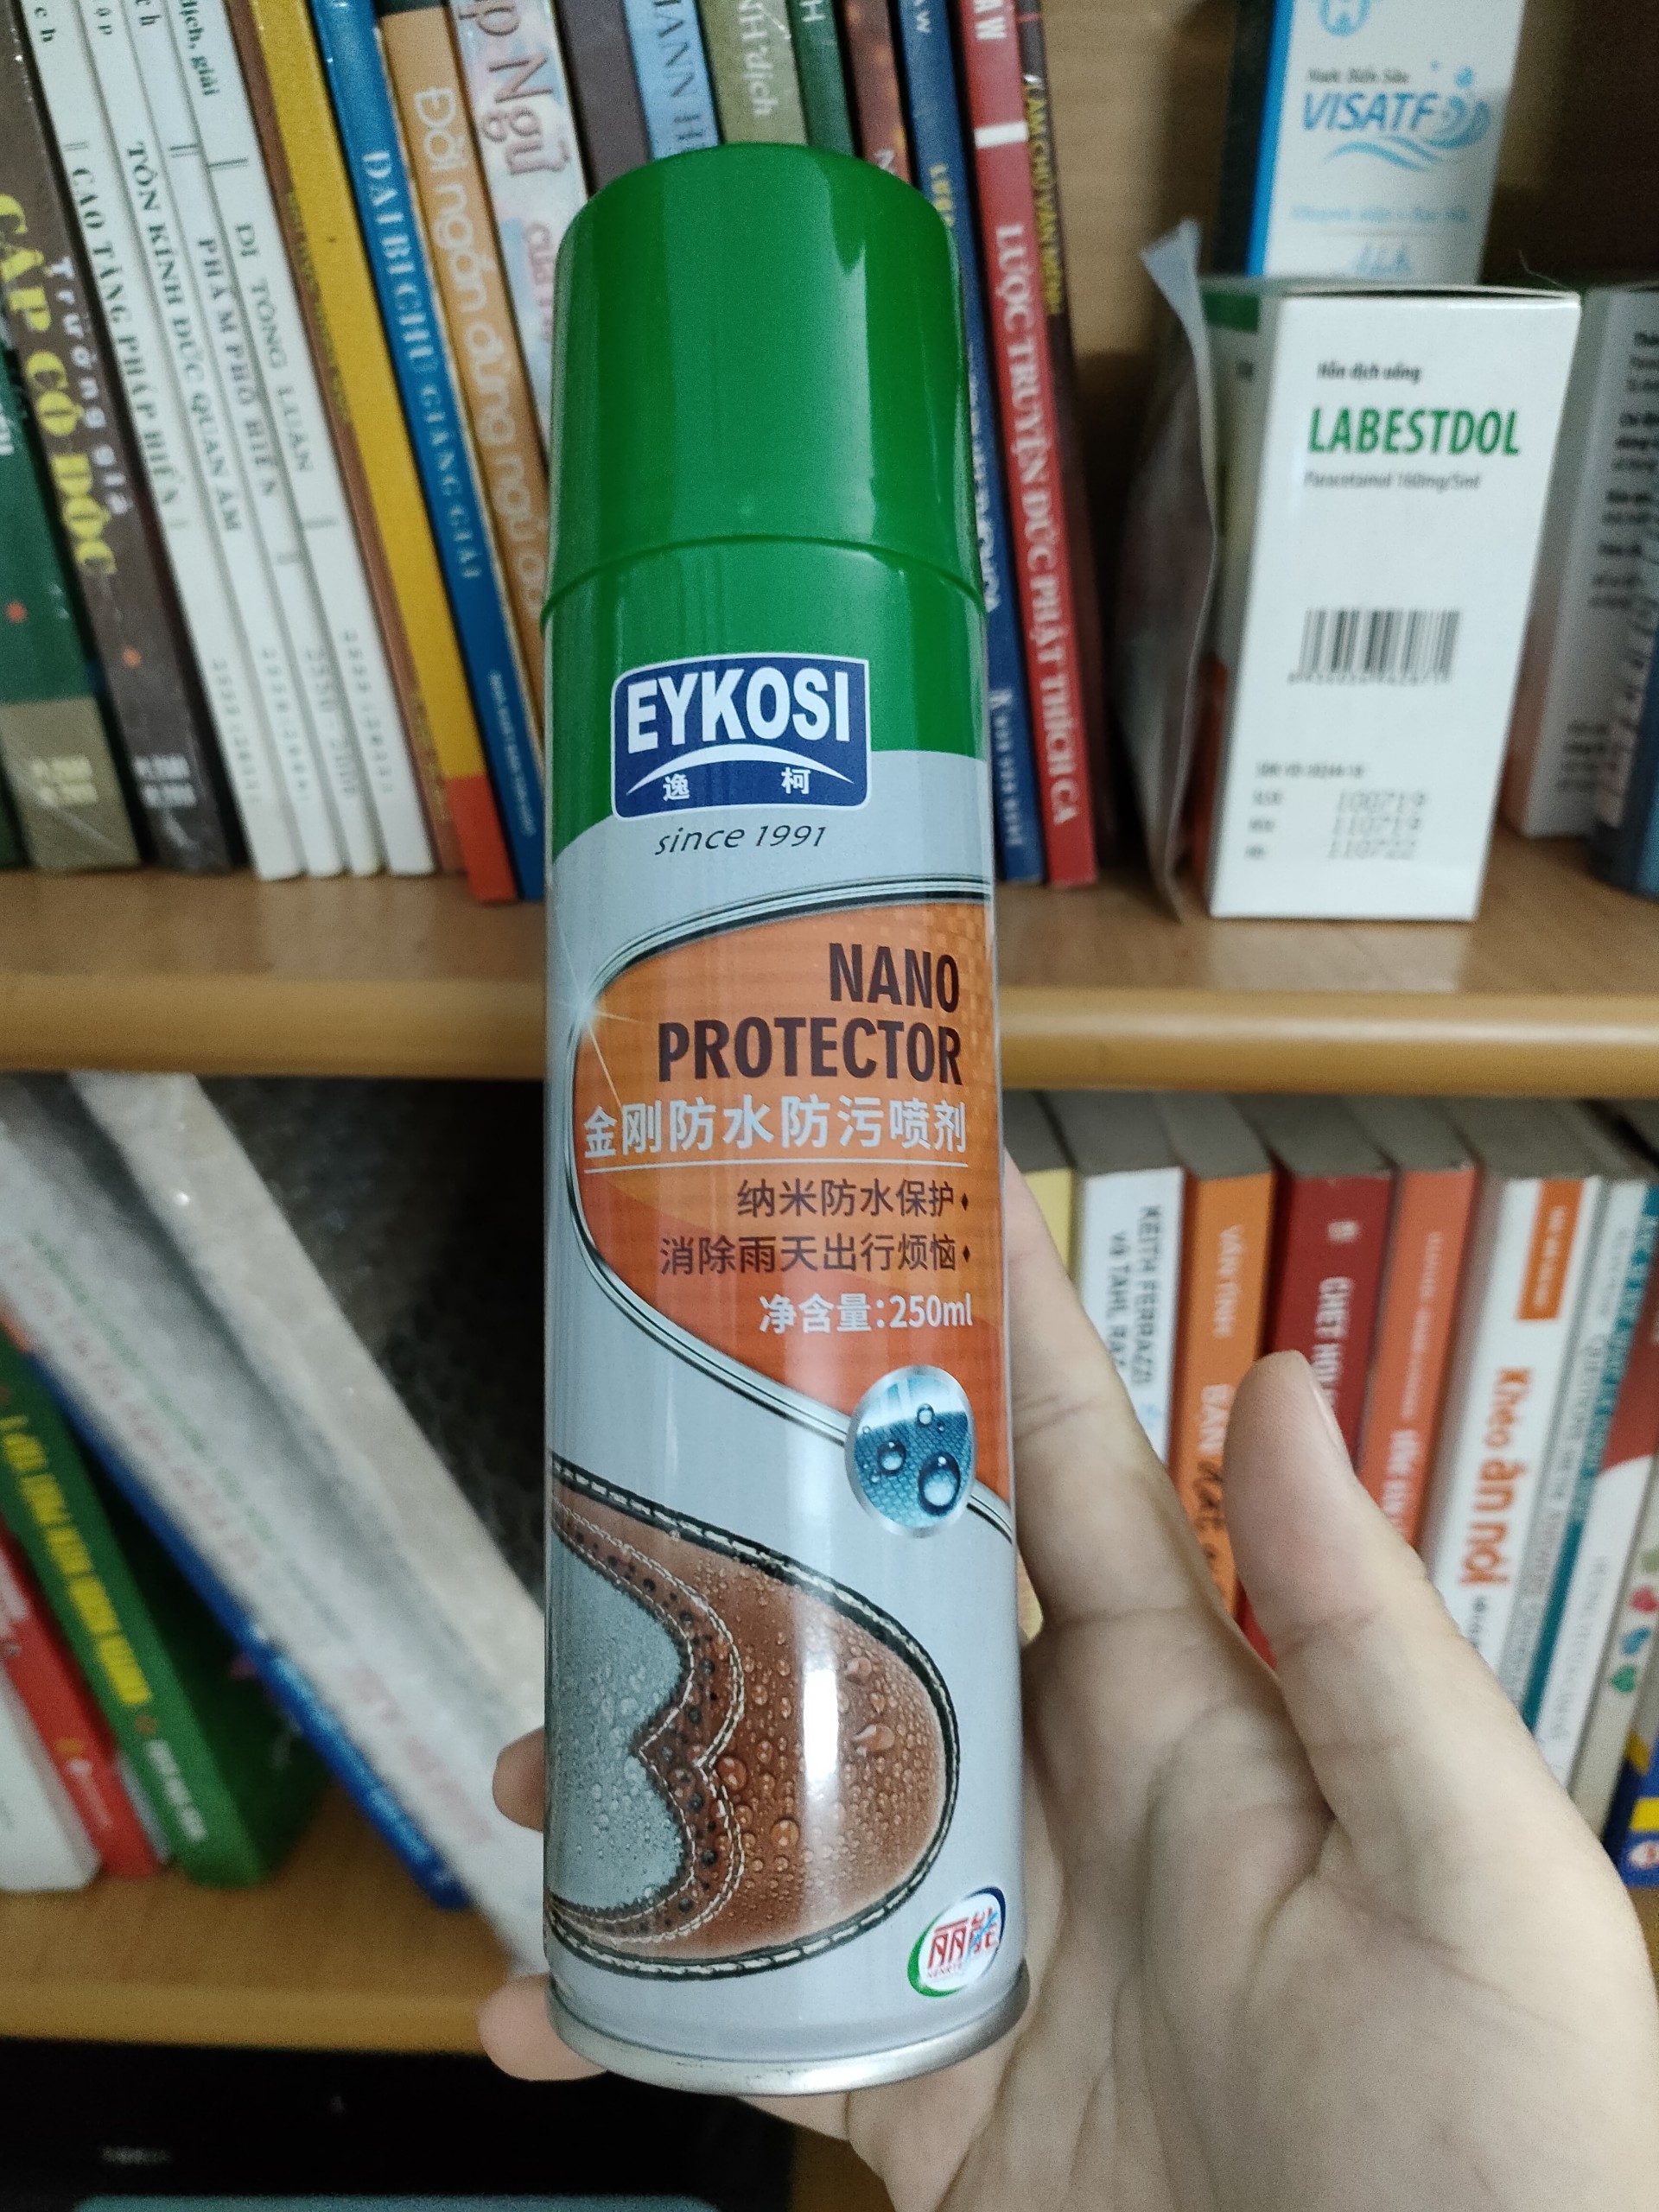 Bình xịt nano chính hãng EYKOSI chống thấm nước, chống bám bẩn, không độc hại